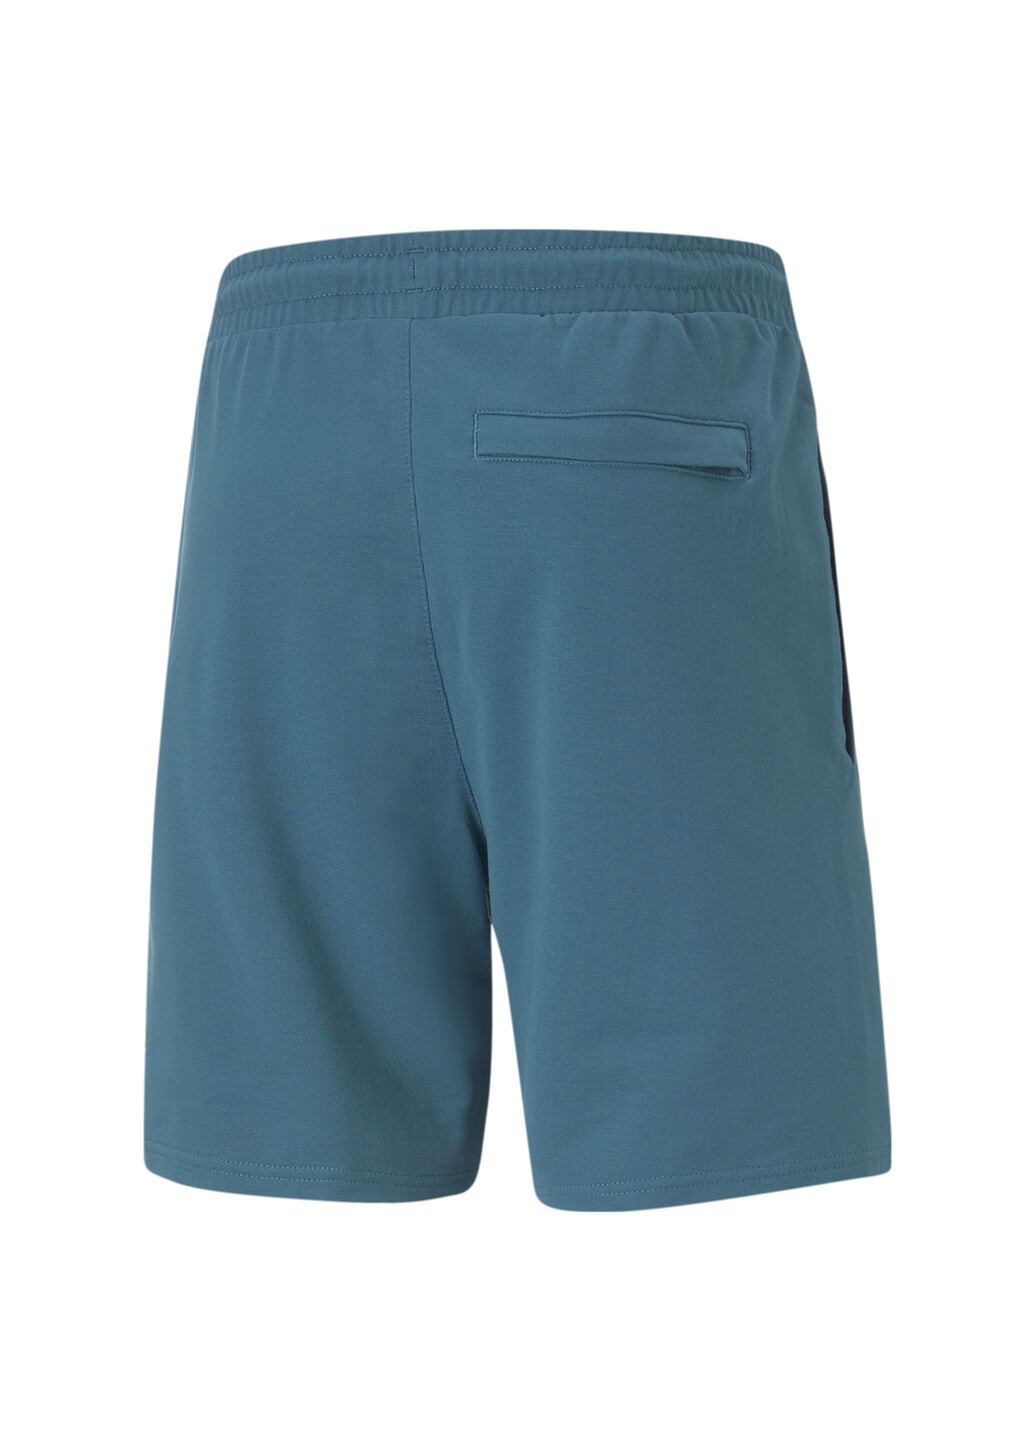 Шорты Nature Camp Graphic Men’s Shorts Puma однотонные синие спортивные хлопок, полиэстер